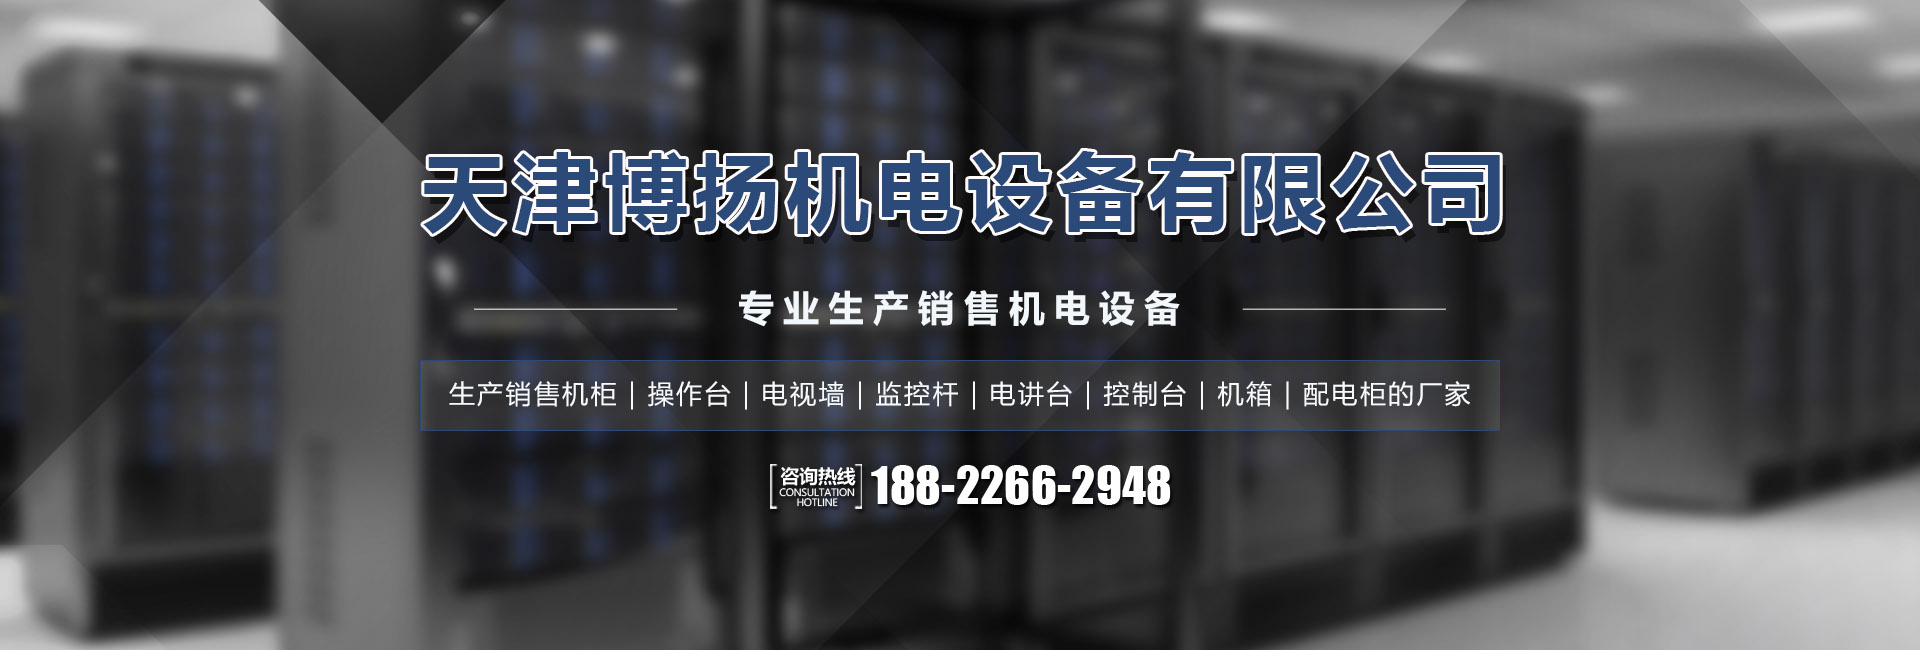 安博·体育(中国)有限公司官网